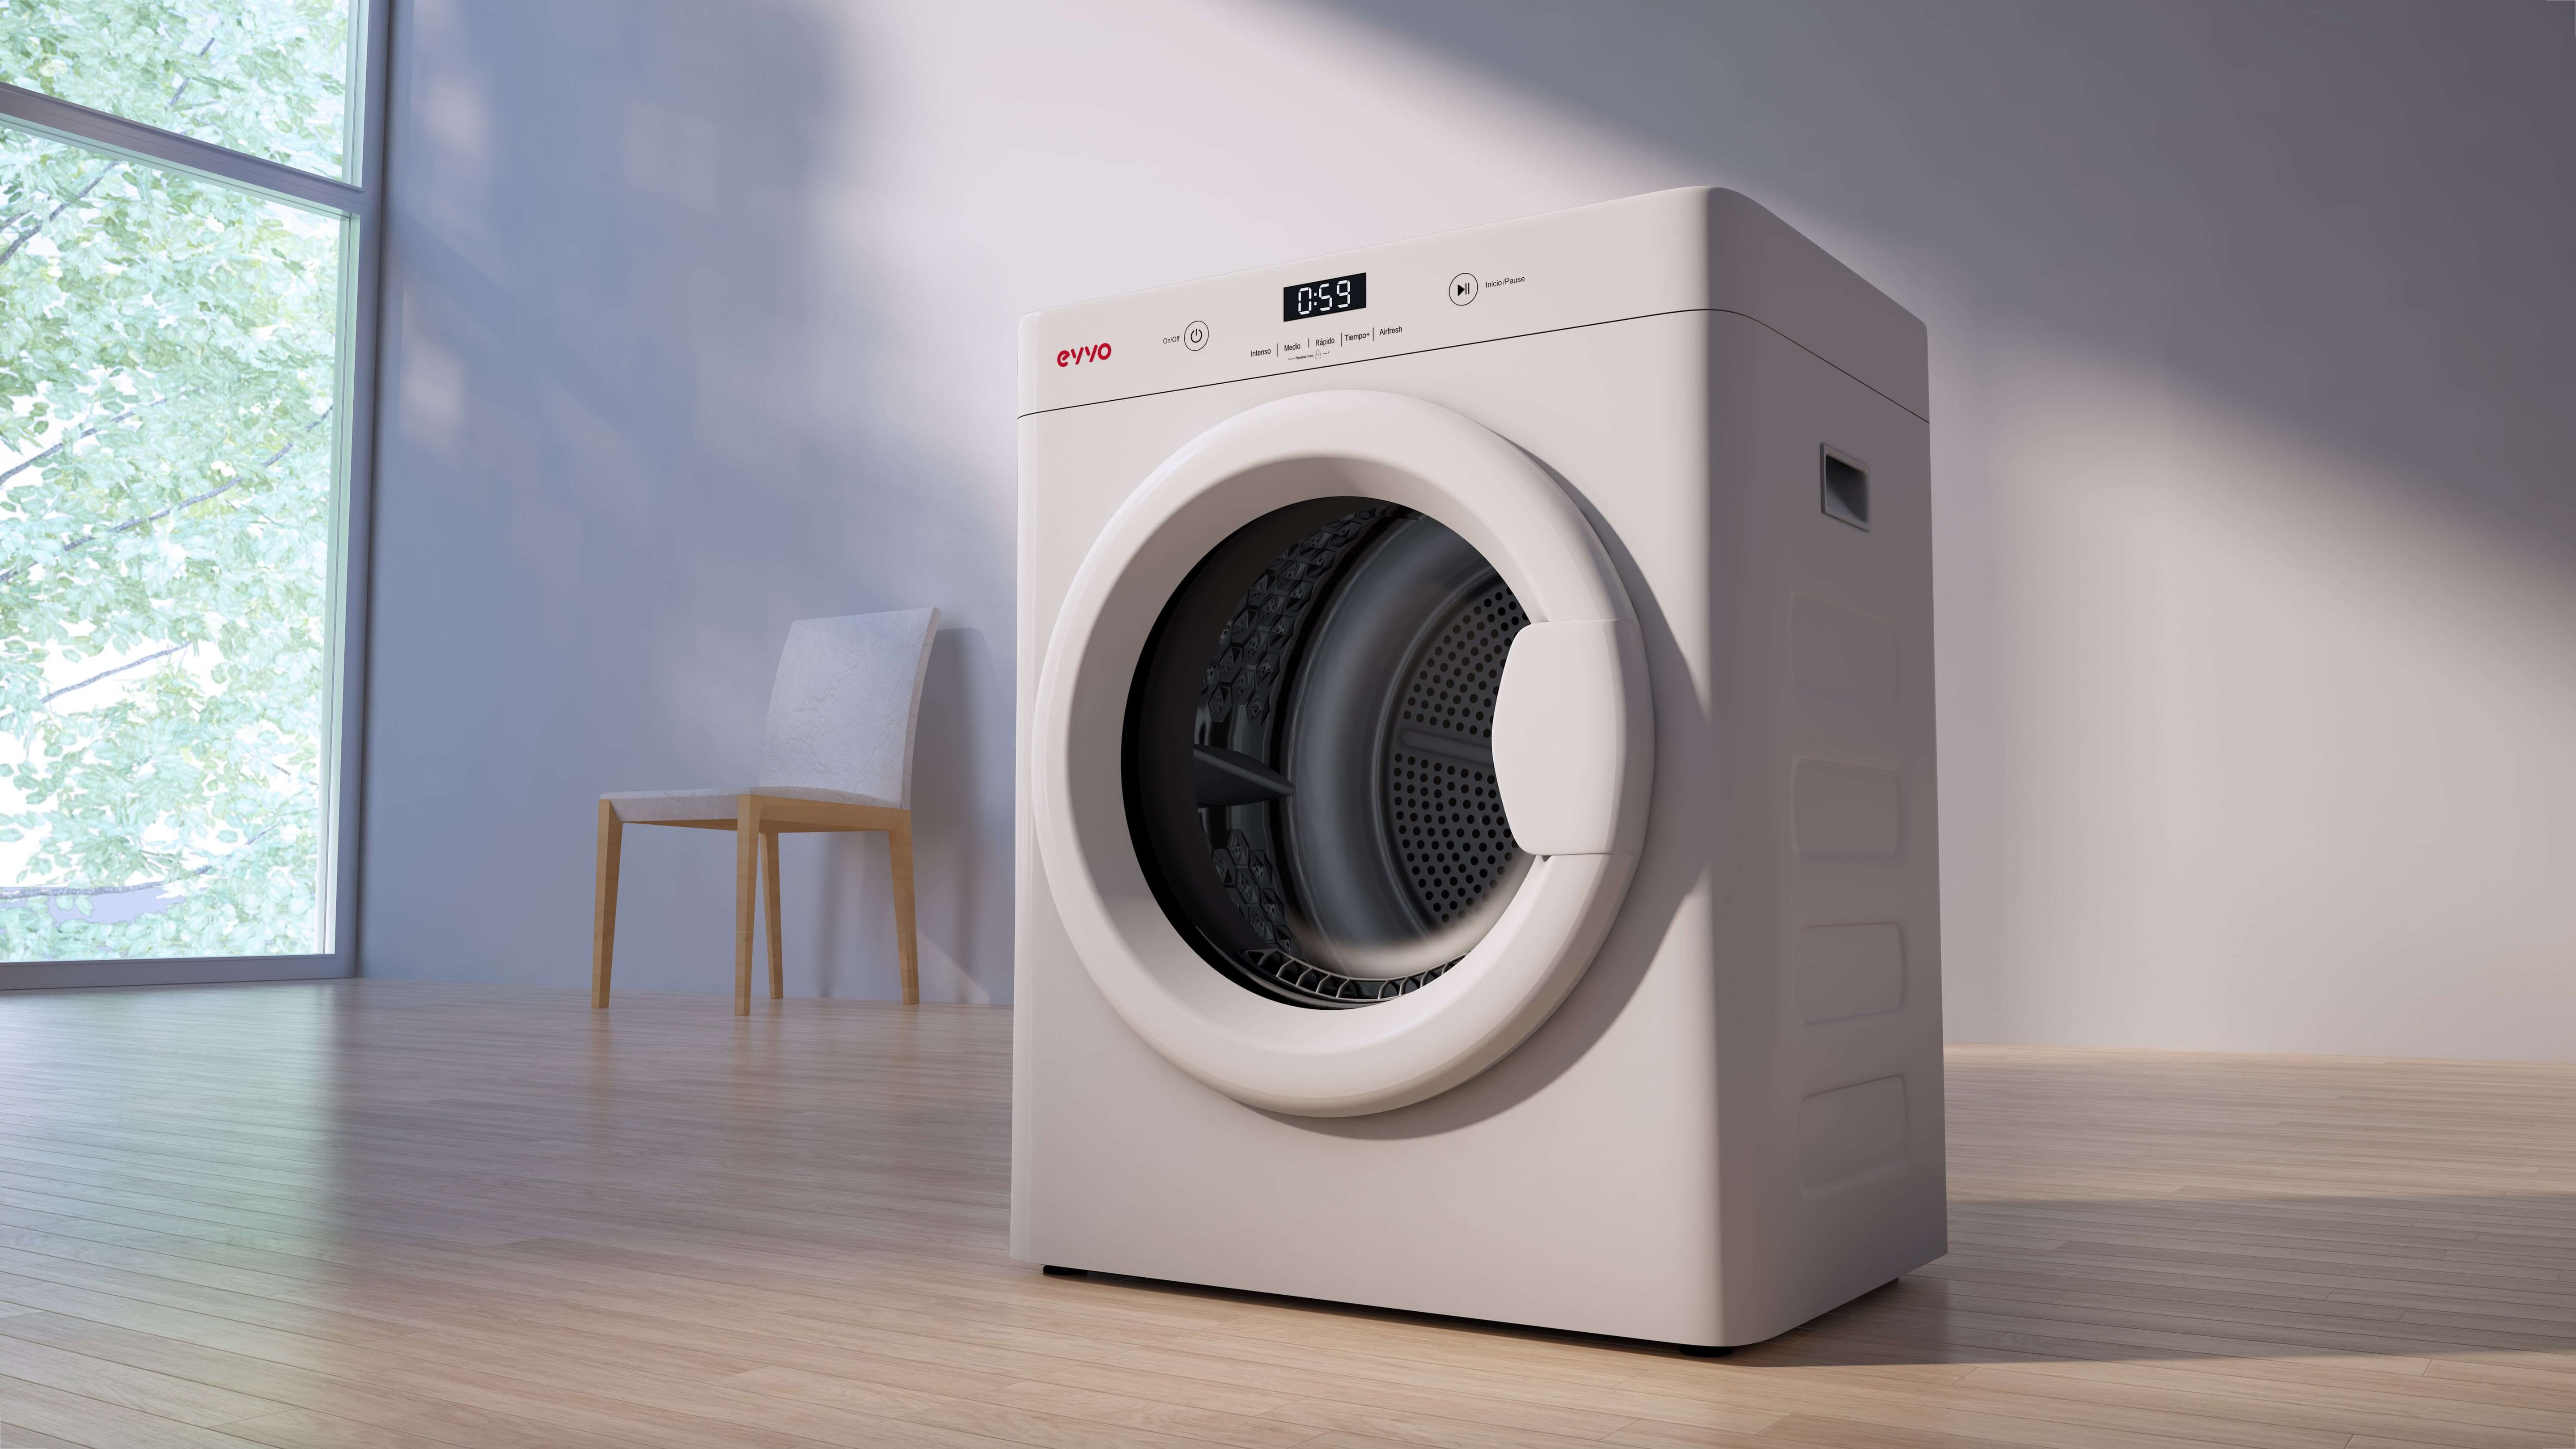 Cómo usar la secadora? Los mejores consejos – EVVO HOME